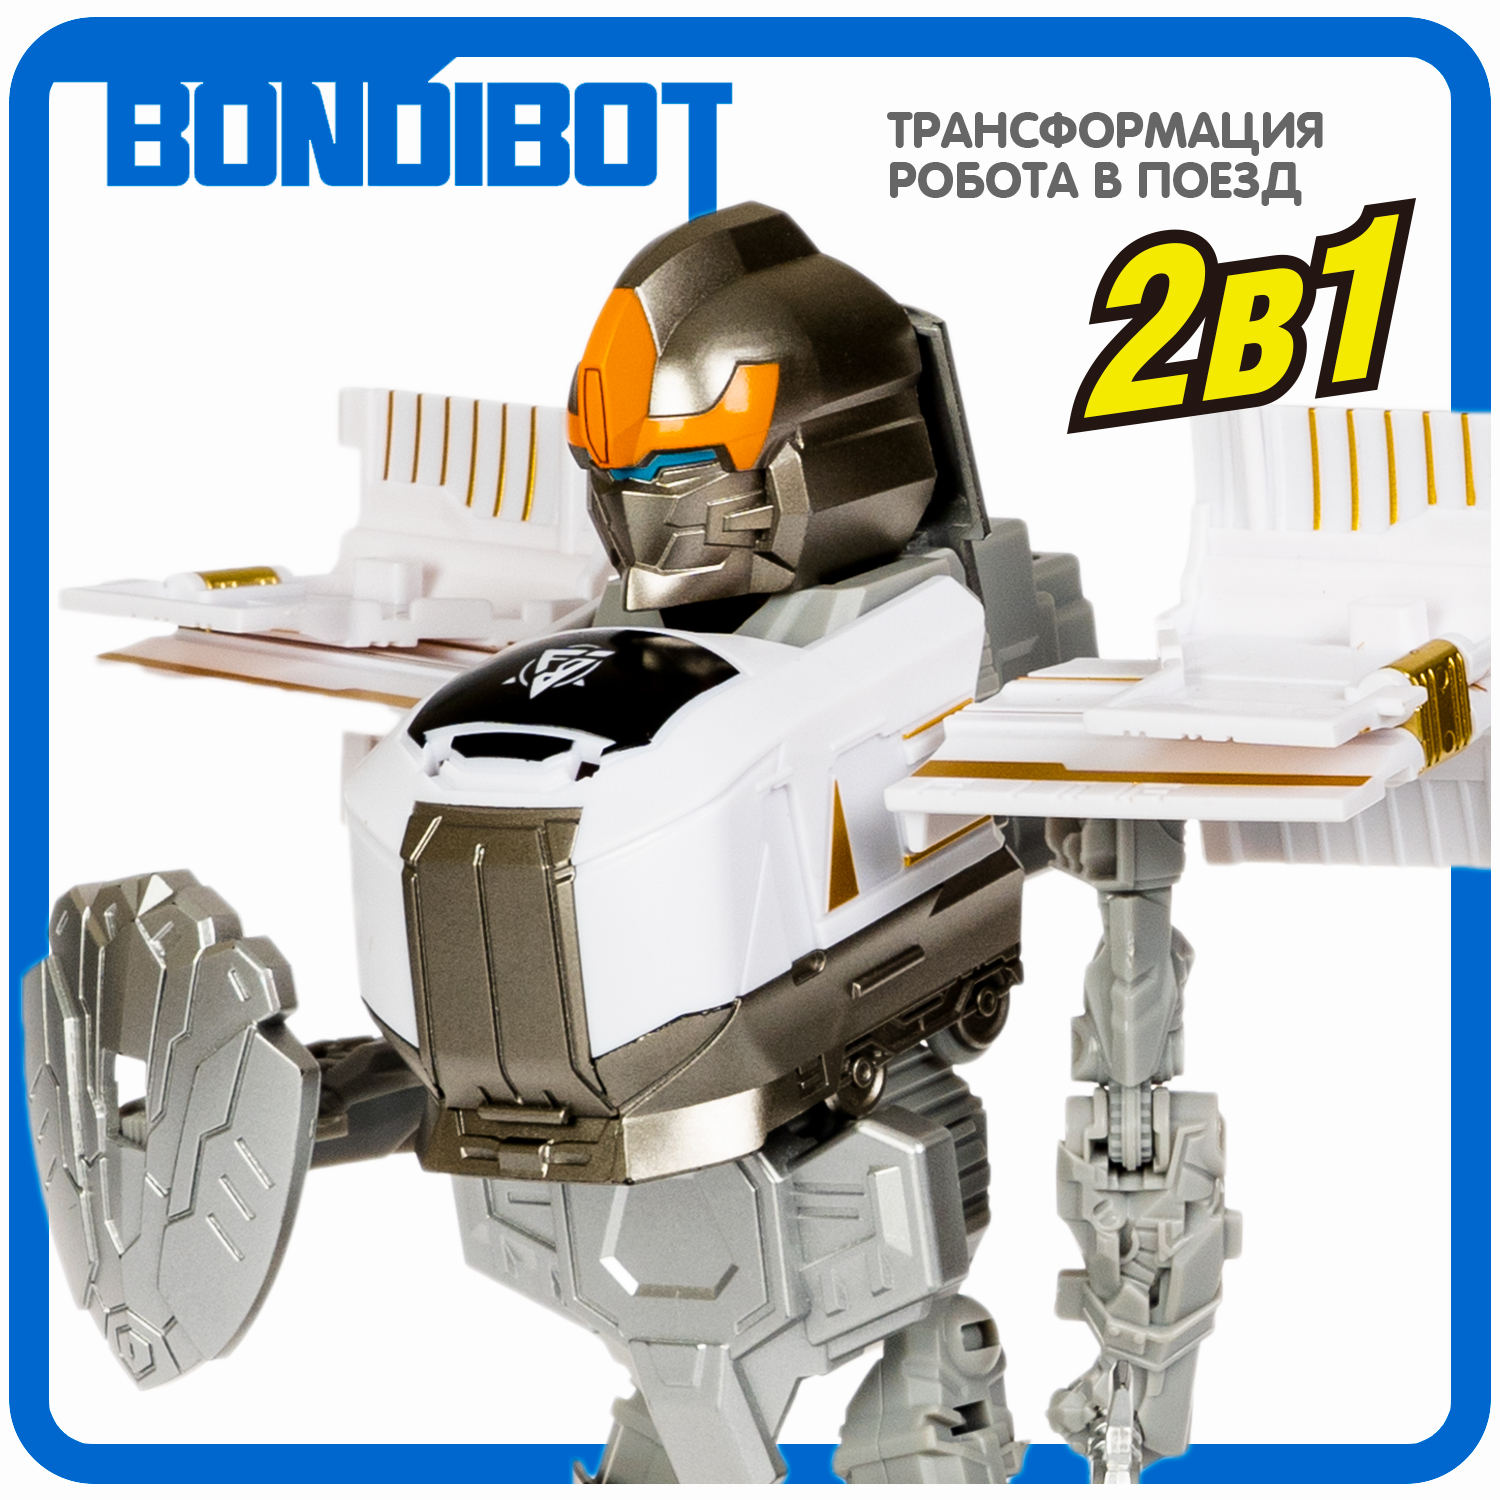 Трансформер BONDIBON bondibot 2в1 робот-поезд коричневого цвета - фото 4